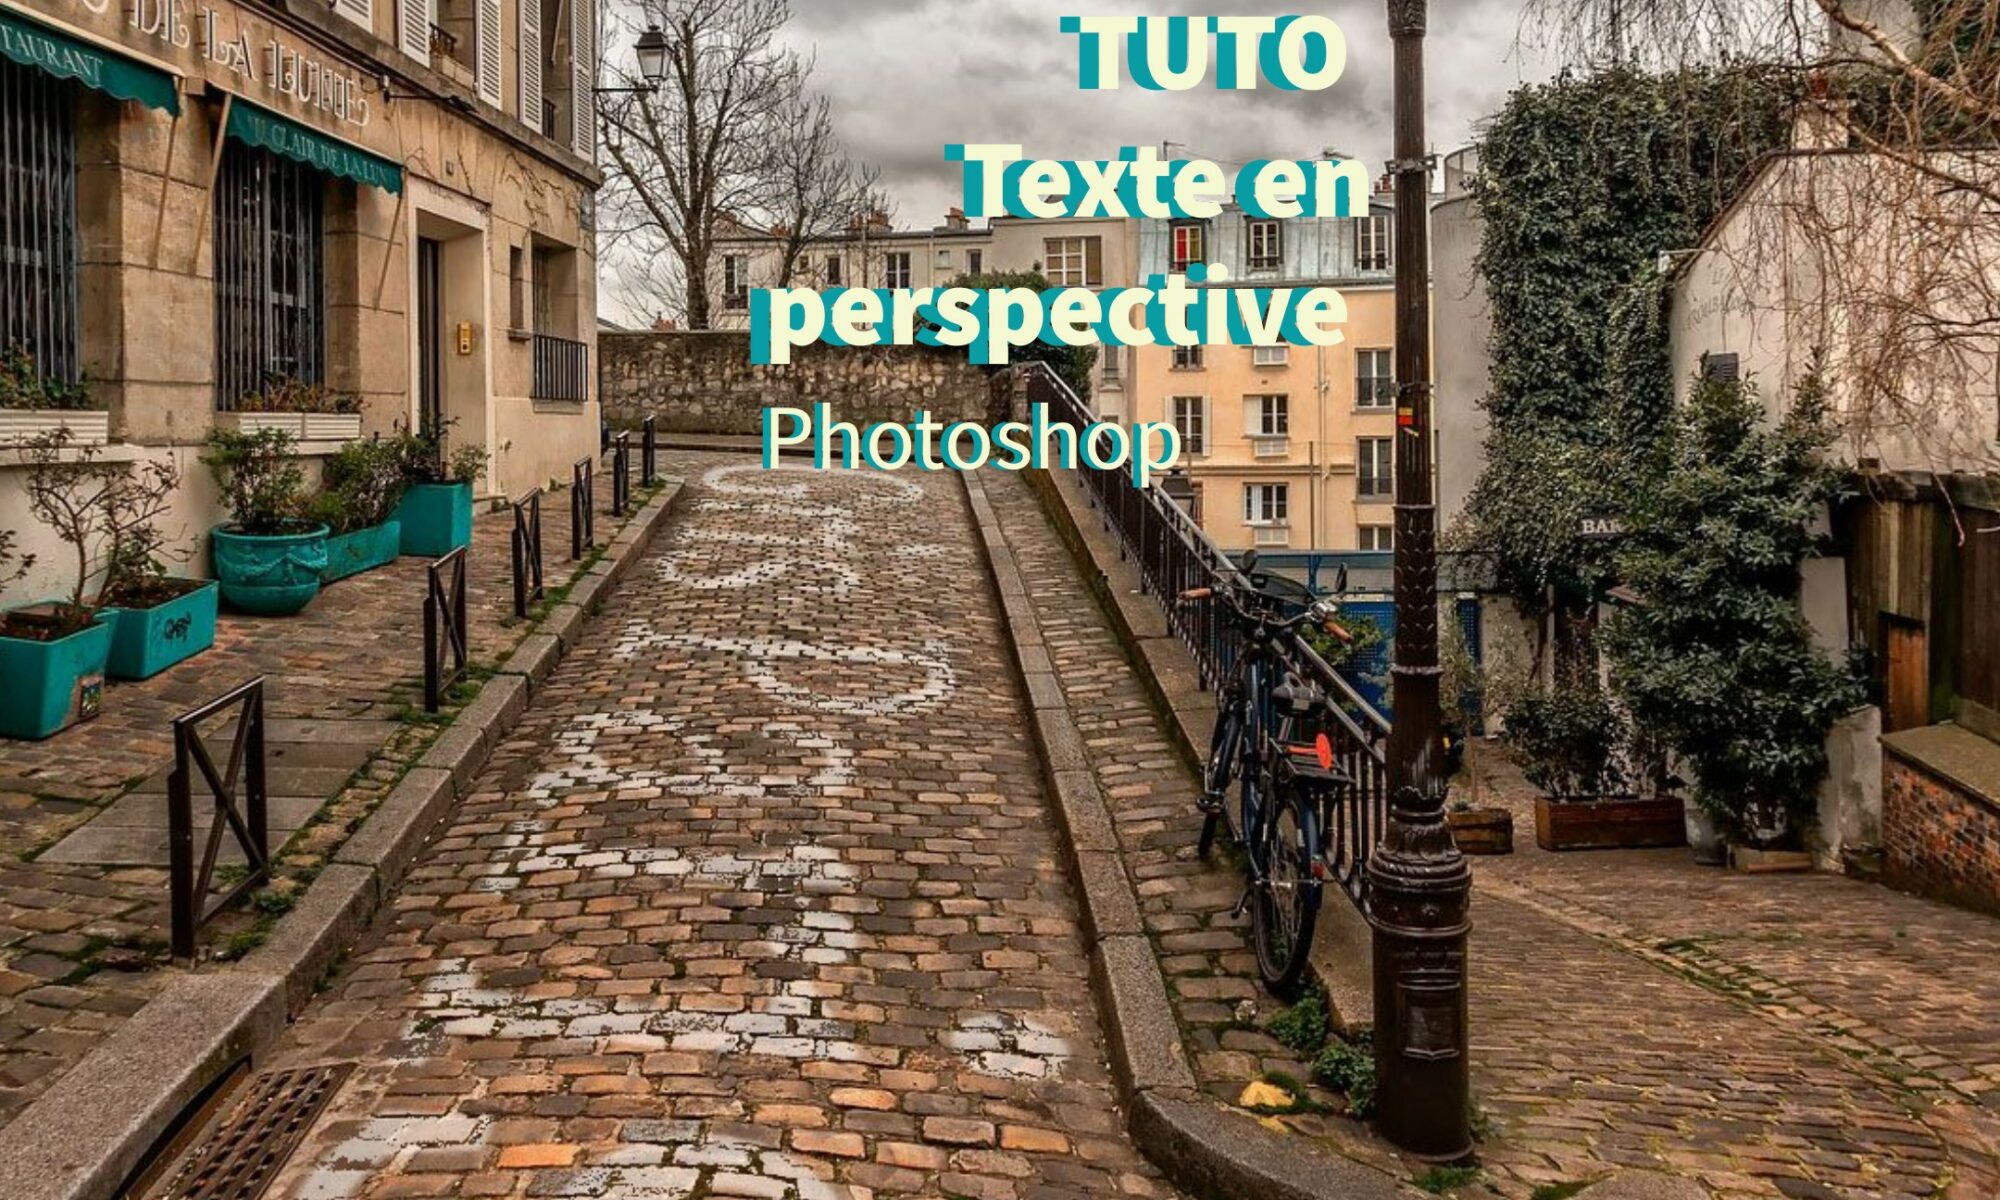 Tutoriel photoshop texte perspective